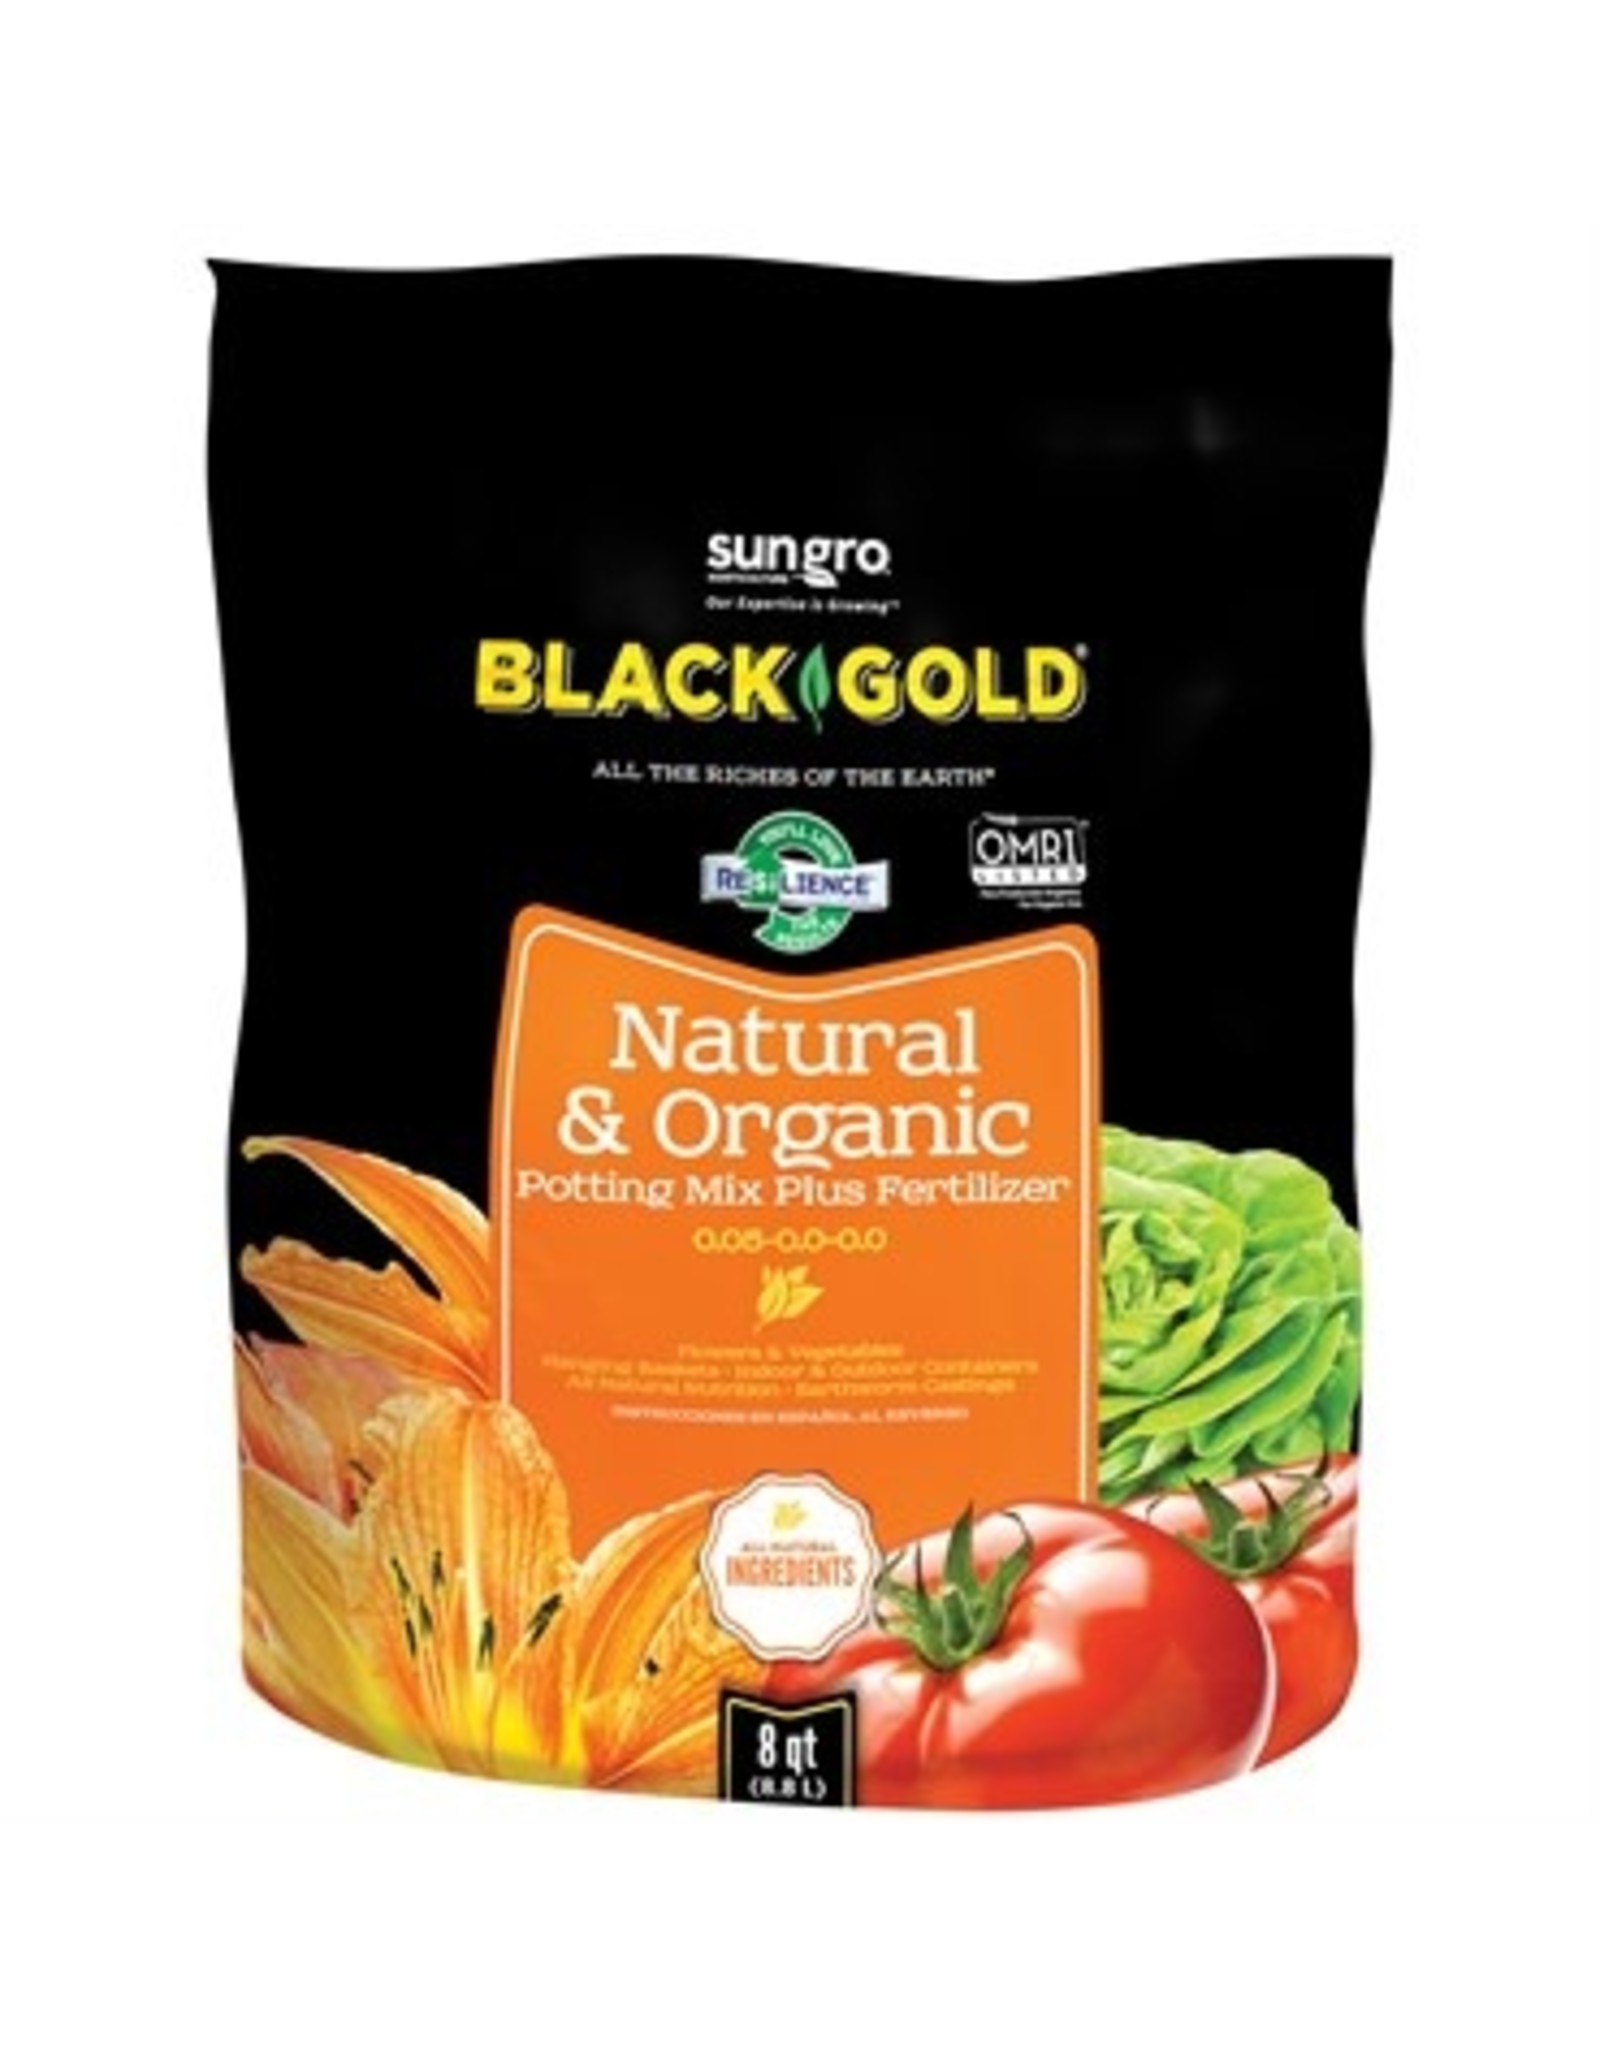 Potting soil, Black Gold - 8 qt